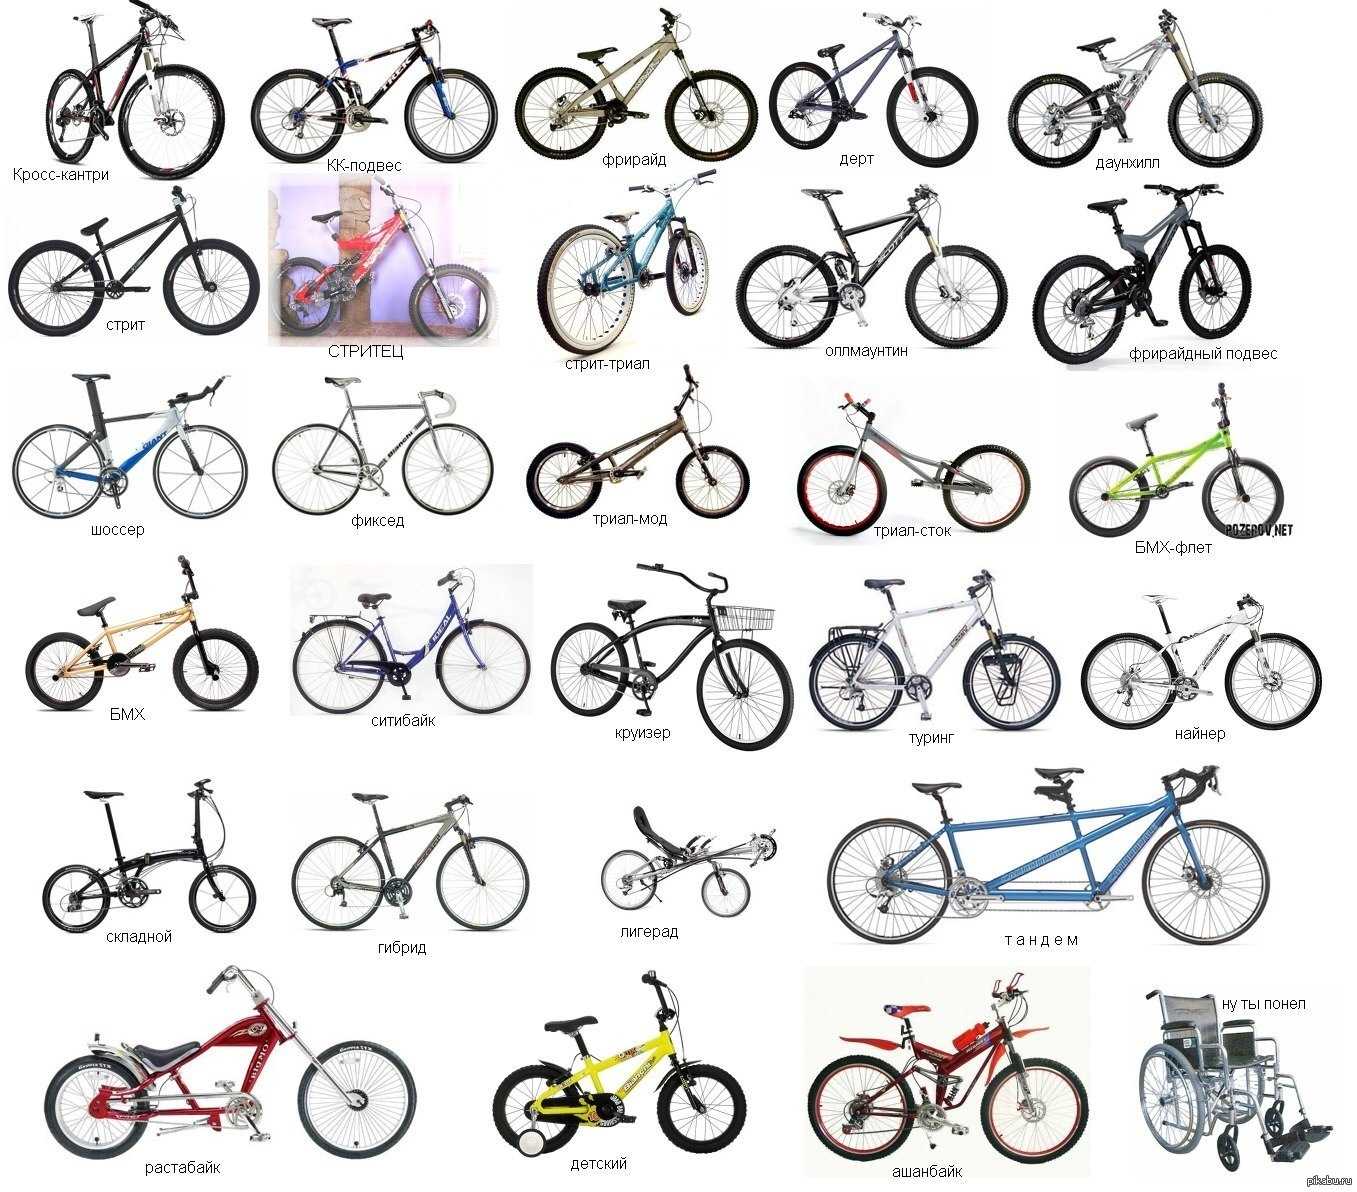 Как выбрать велосипед по назначению, полу, возрасту, тонкости и советы